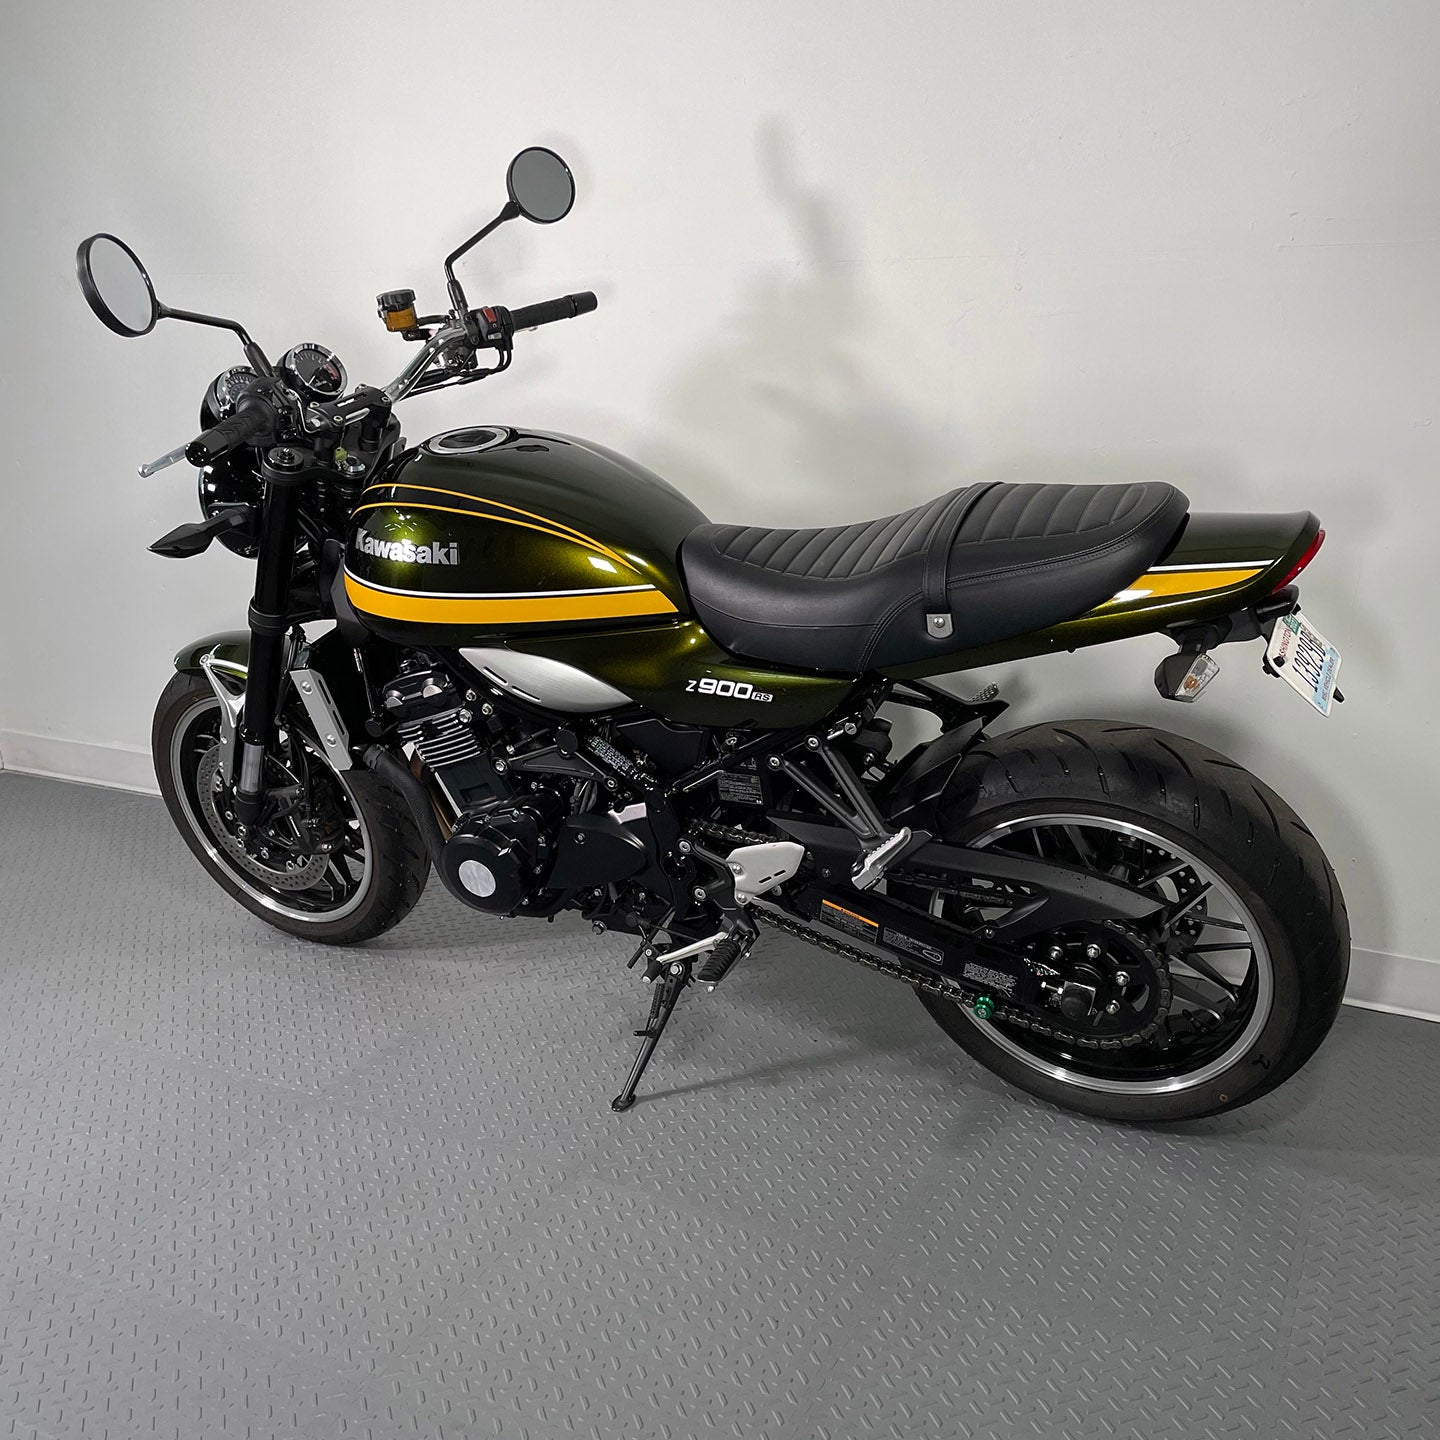 2020 Kawasaki Z900RS (1,170 Miles)